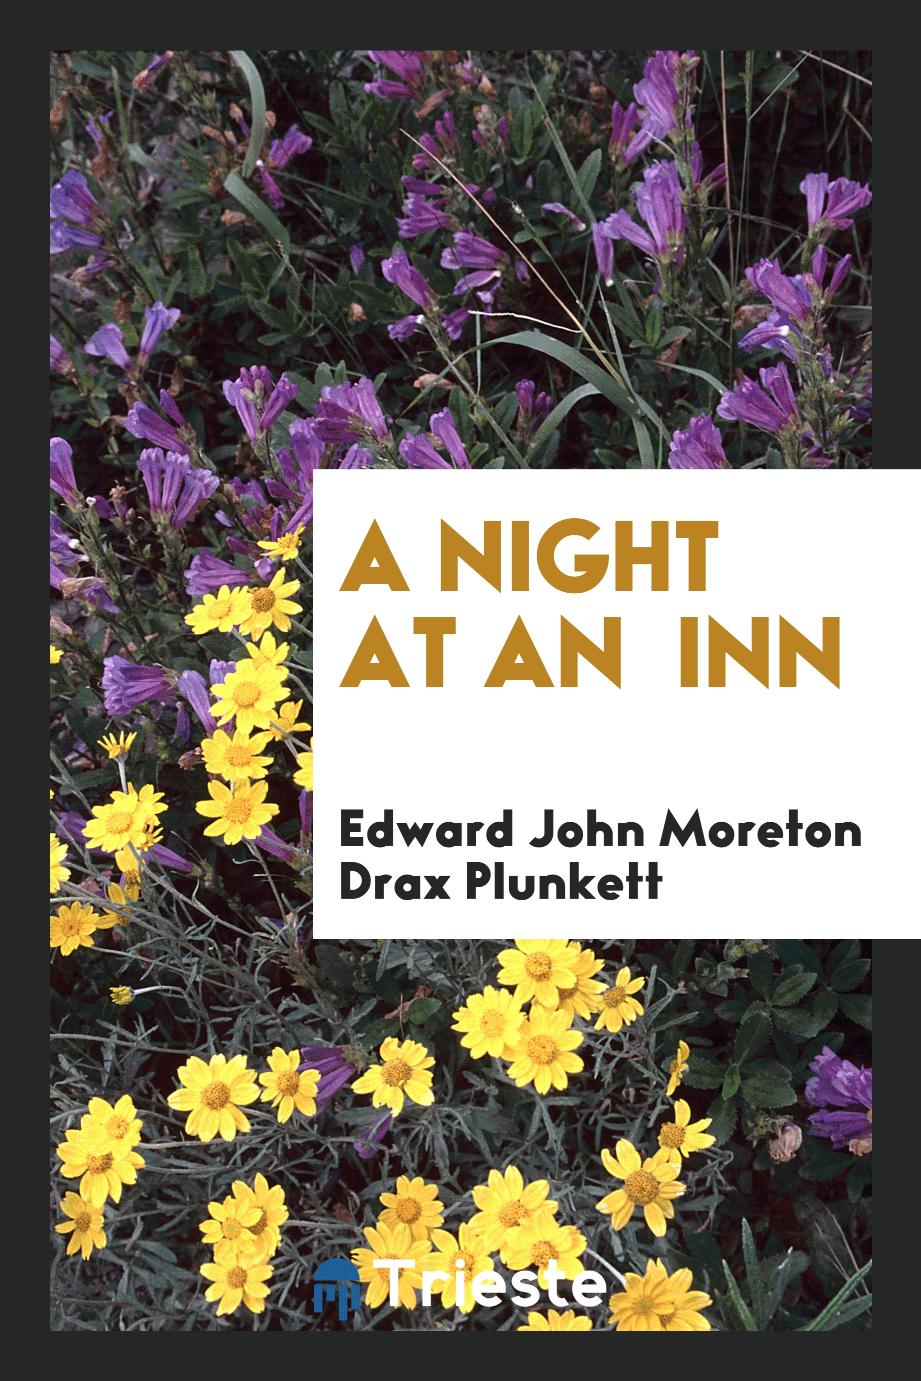 A night at an inn